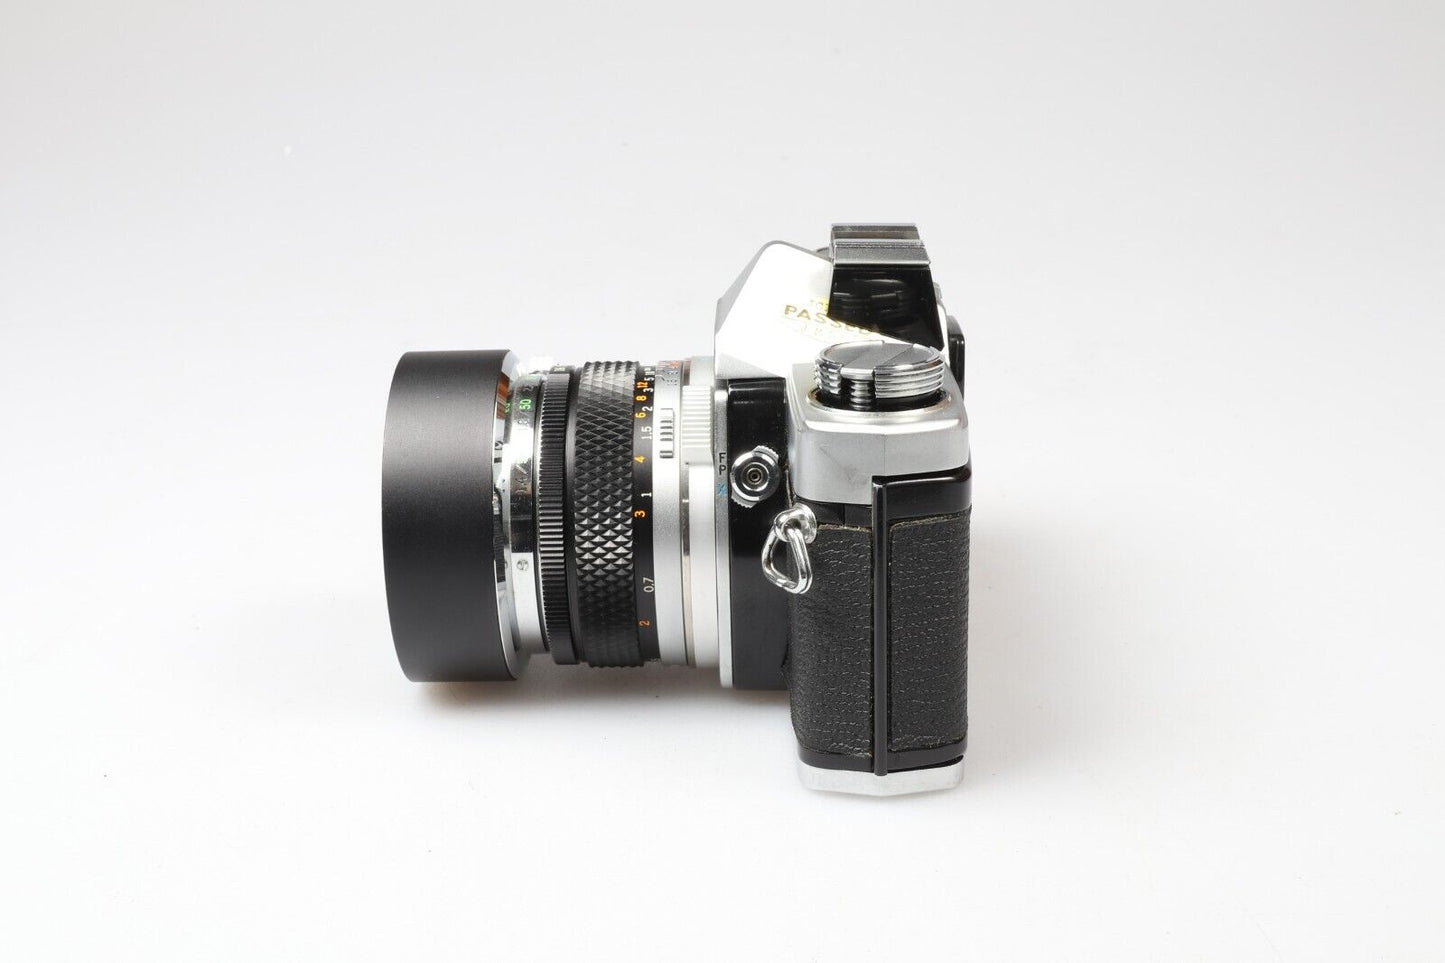 Olympus OM-1 |  35mm SLR Fillm Camera | F.Zuiko 50mm f1.8 Lens